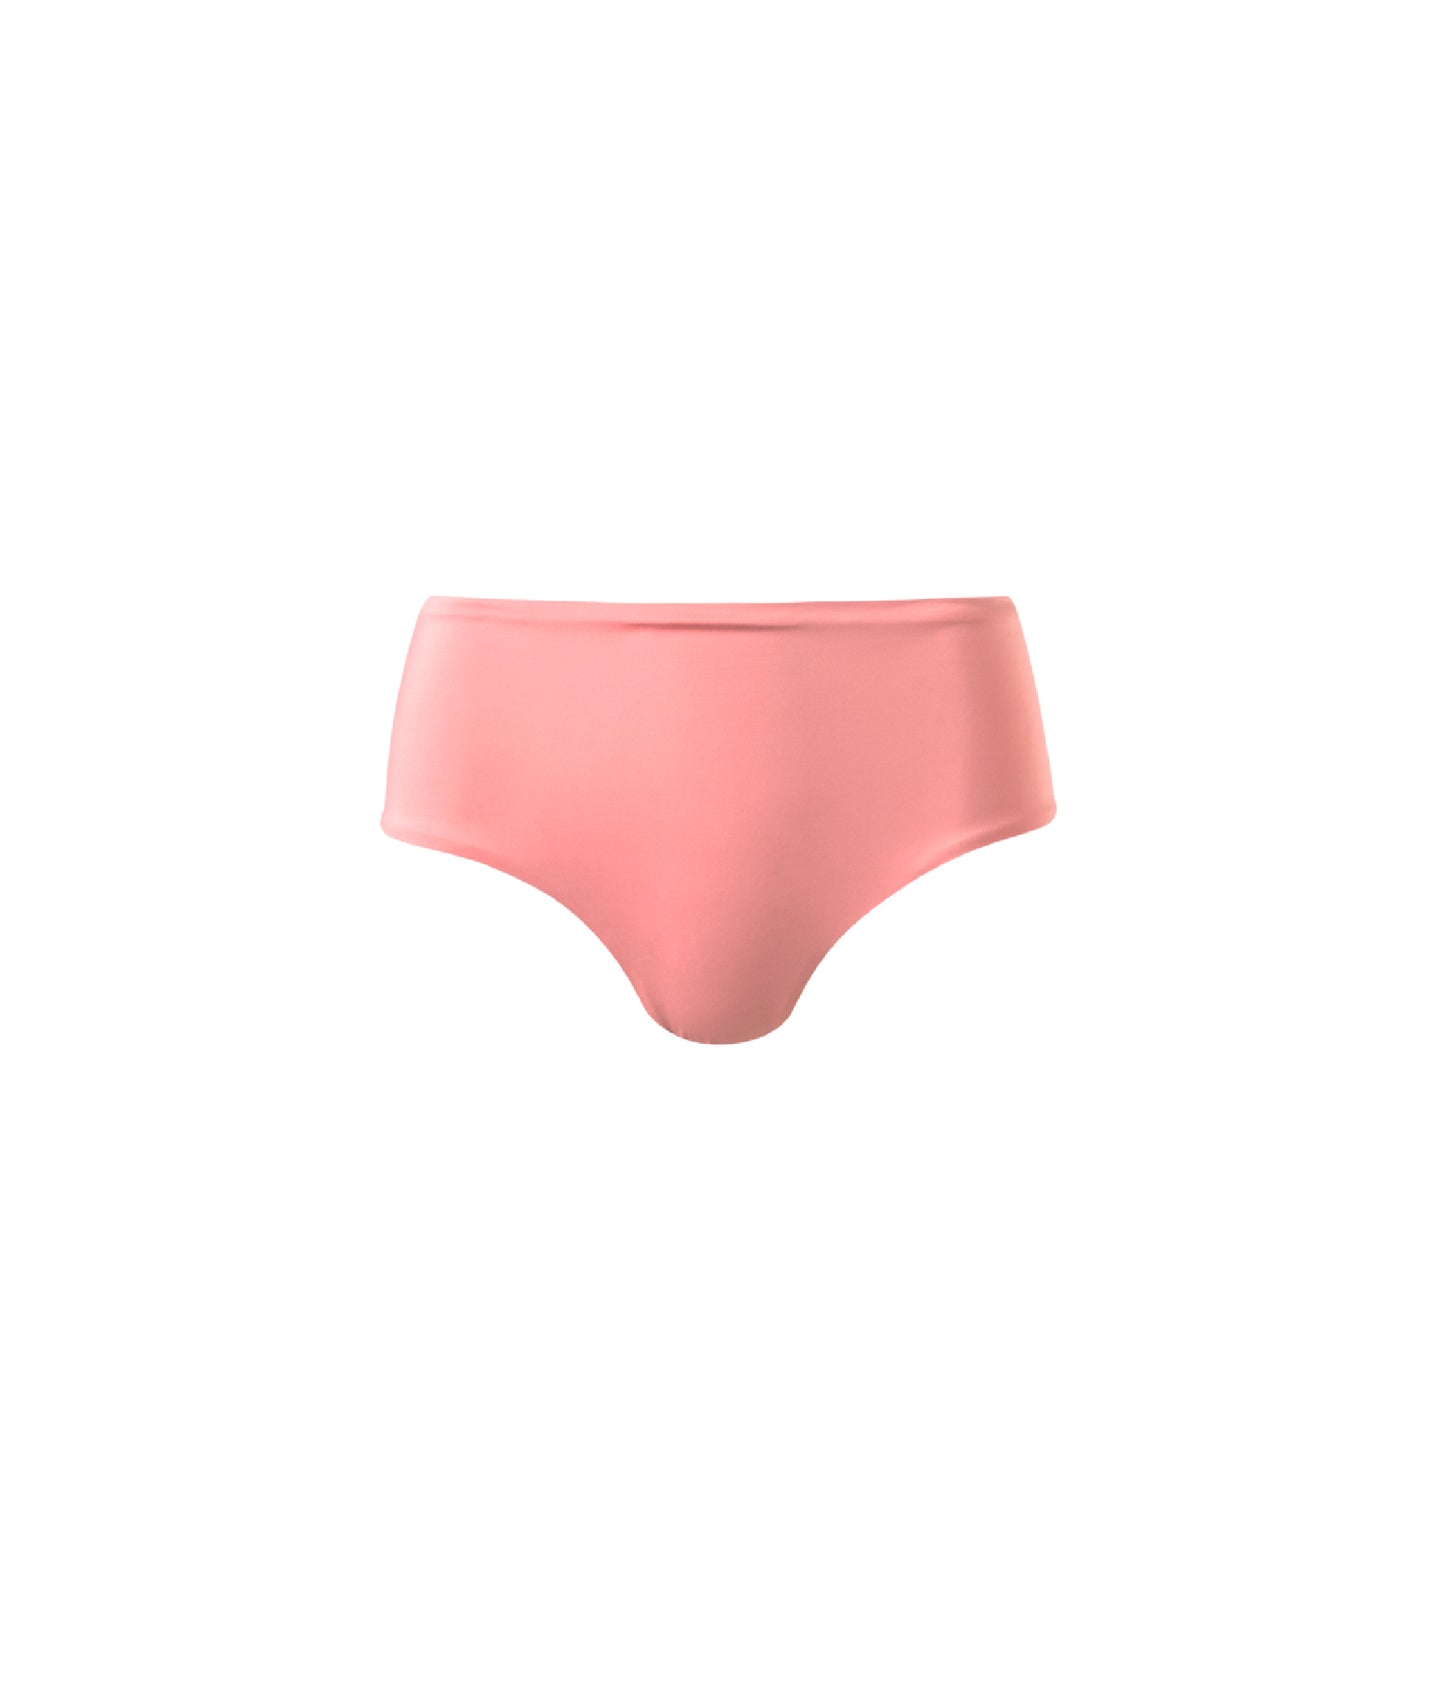 Verdelimon - Bikini Bottom - Angeles  - Printed - Rose - Front